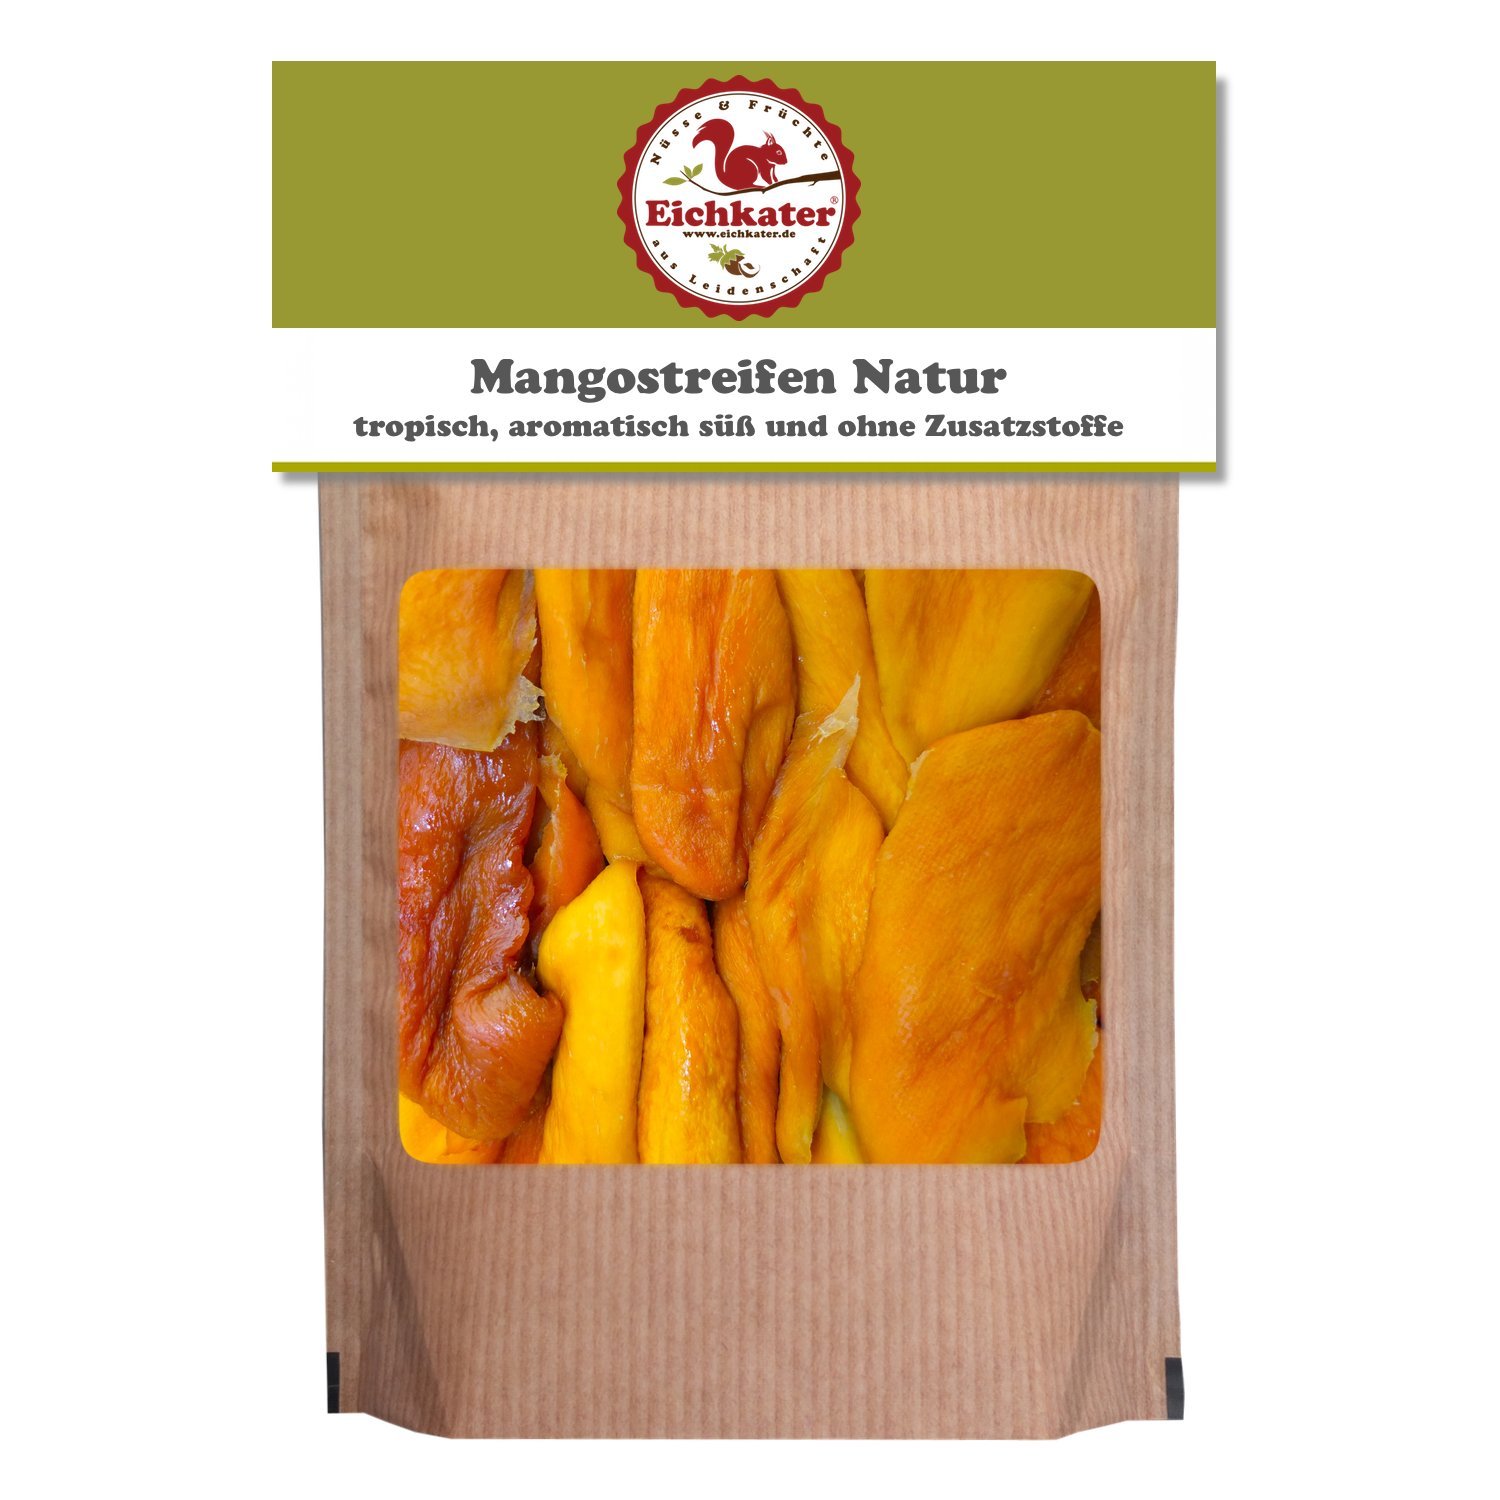 Eichkater Mangostreifen Natur 6er-Pack (6x250 g)